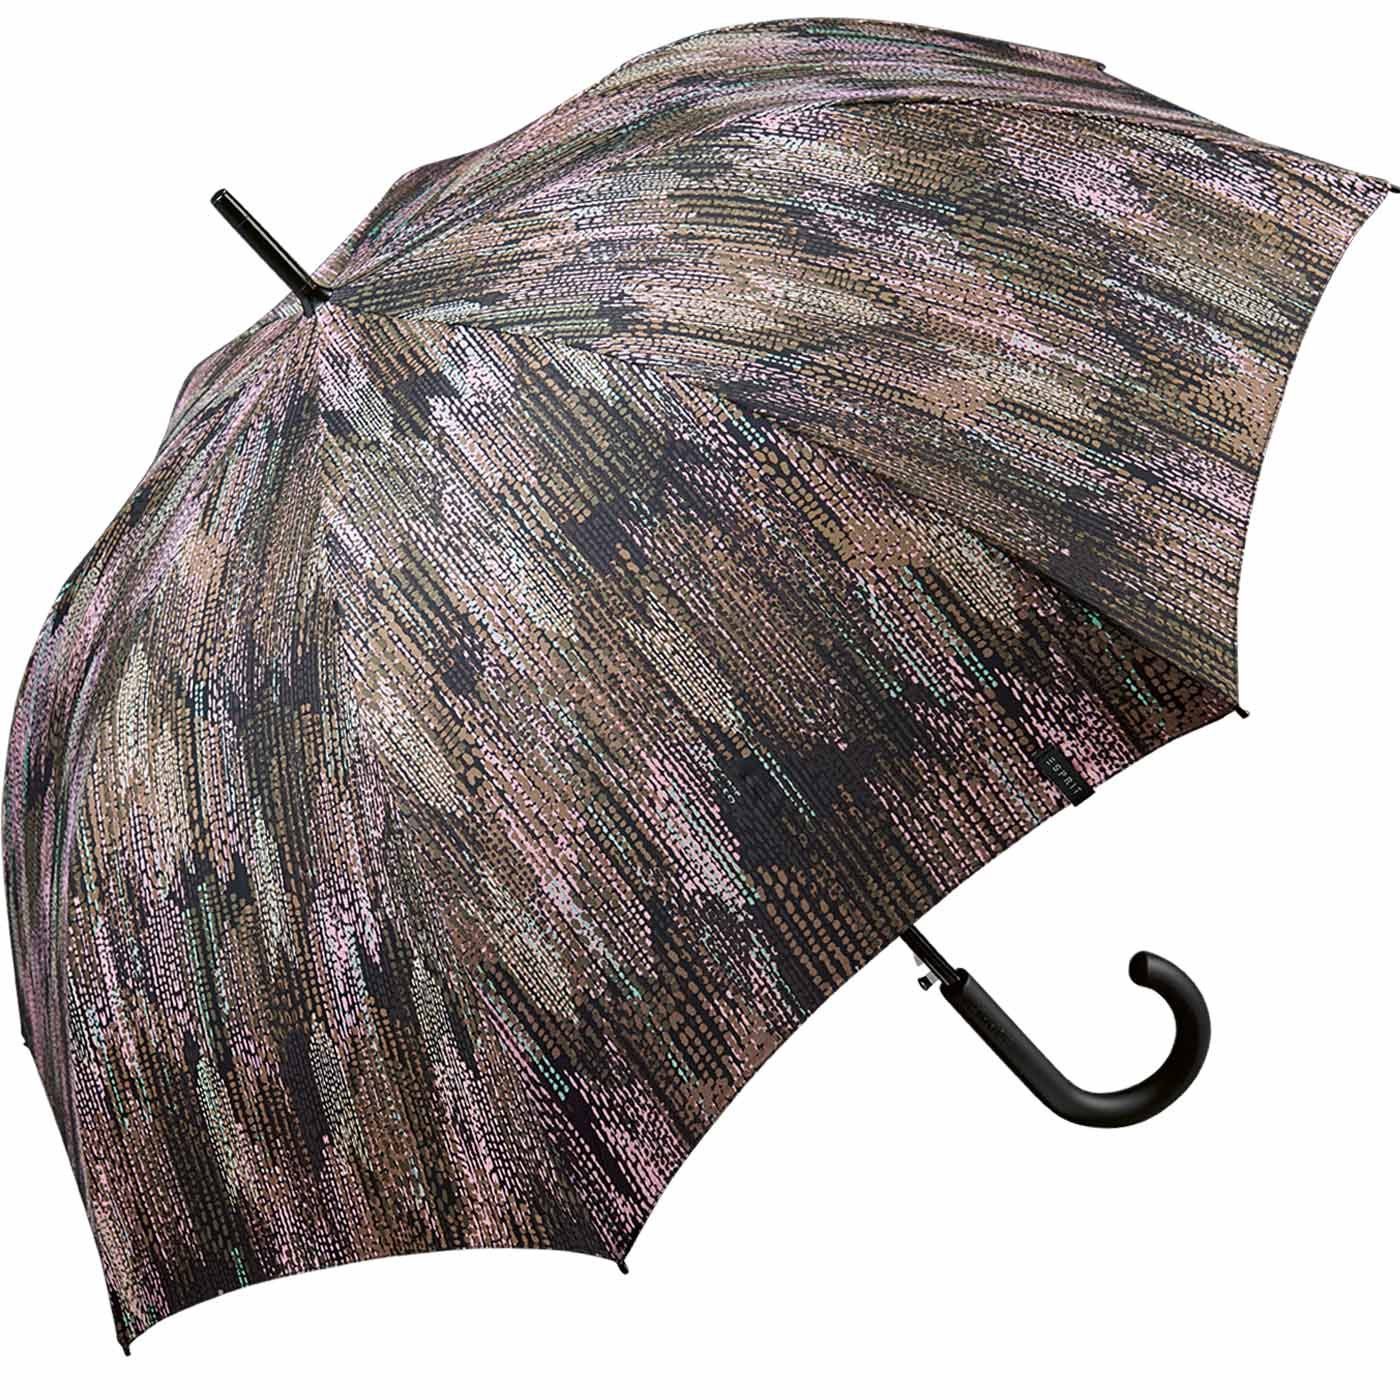 Esprit Langregenschirm Damen - Auf-Automatik gray, stabil, Blurred Edges Optik in - verwaschener mit groß, taupe gedeckter braun